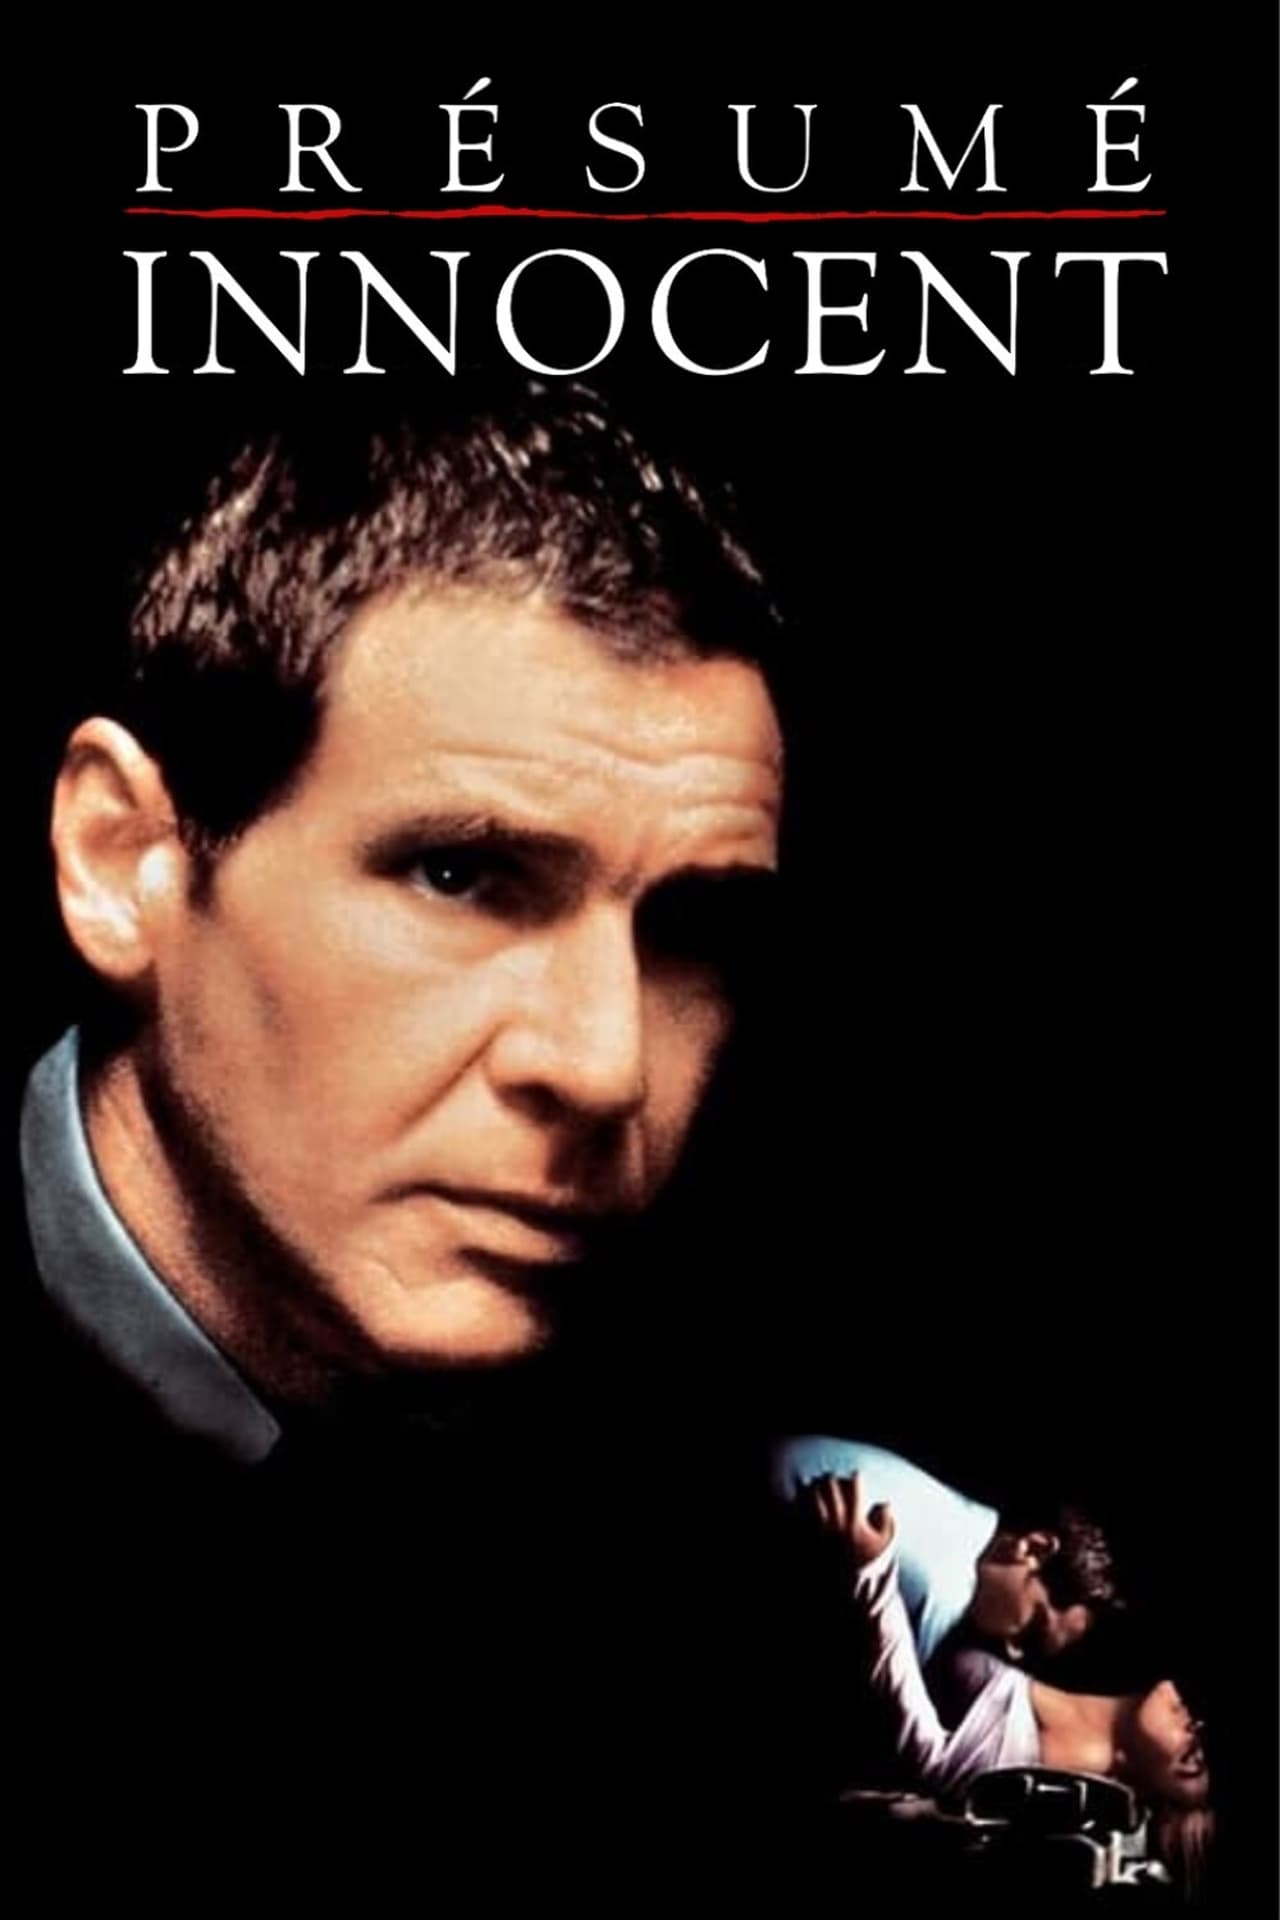 Presumed Innocent Movie Synopsis, Summary, Plot & Film Details